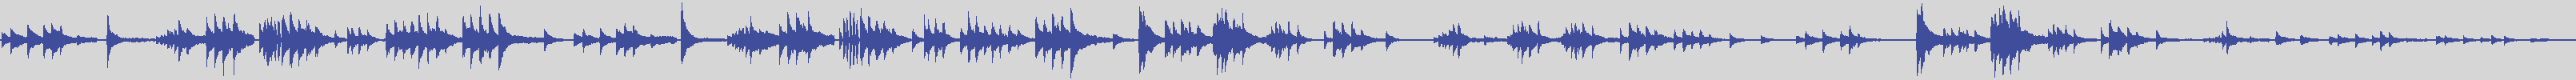 big_music_classic [BMC005] Erik Satie, Corrado Rossi - Sarabande N.2 [] audio wave form